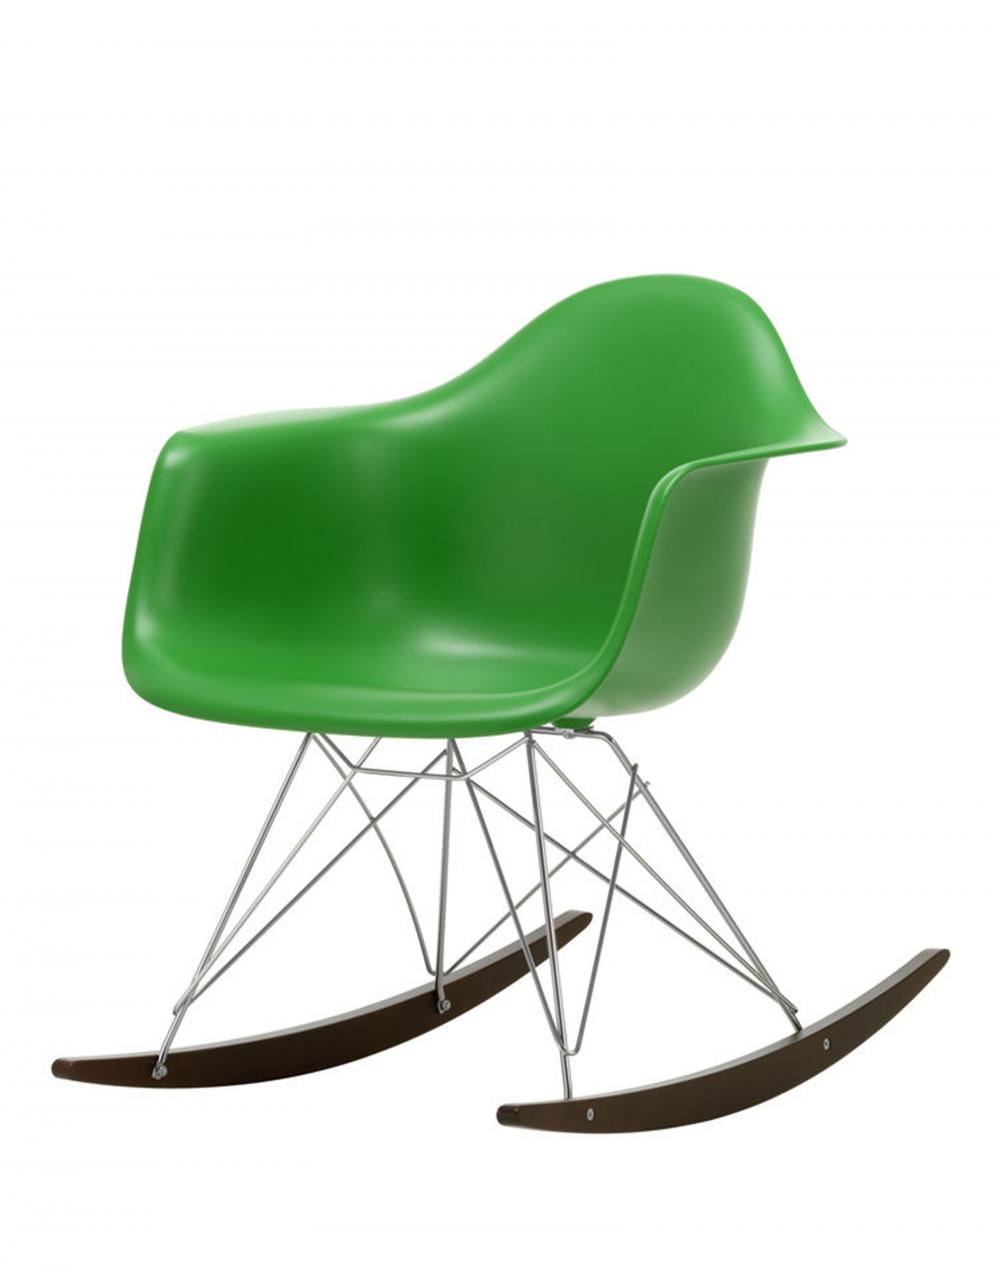 Eames Rar Plastic Rocking Chair Chrome Base Green Dark Maple